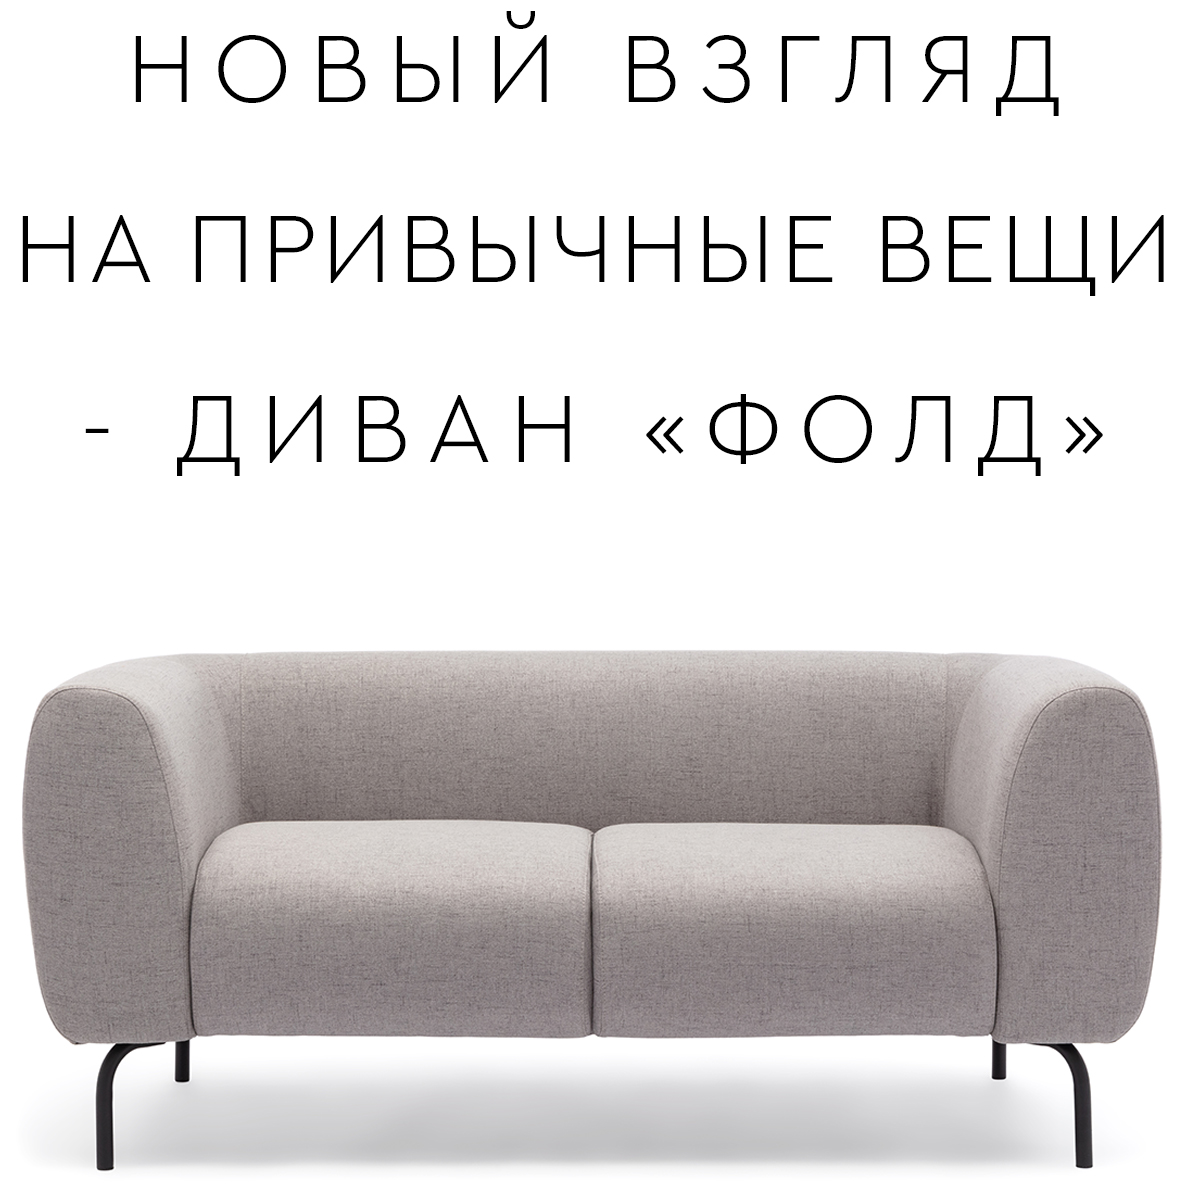 Обновленный диван «ФОЛД» 